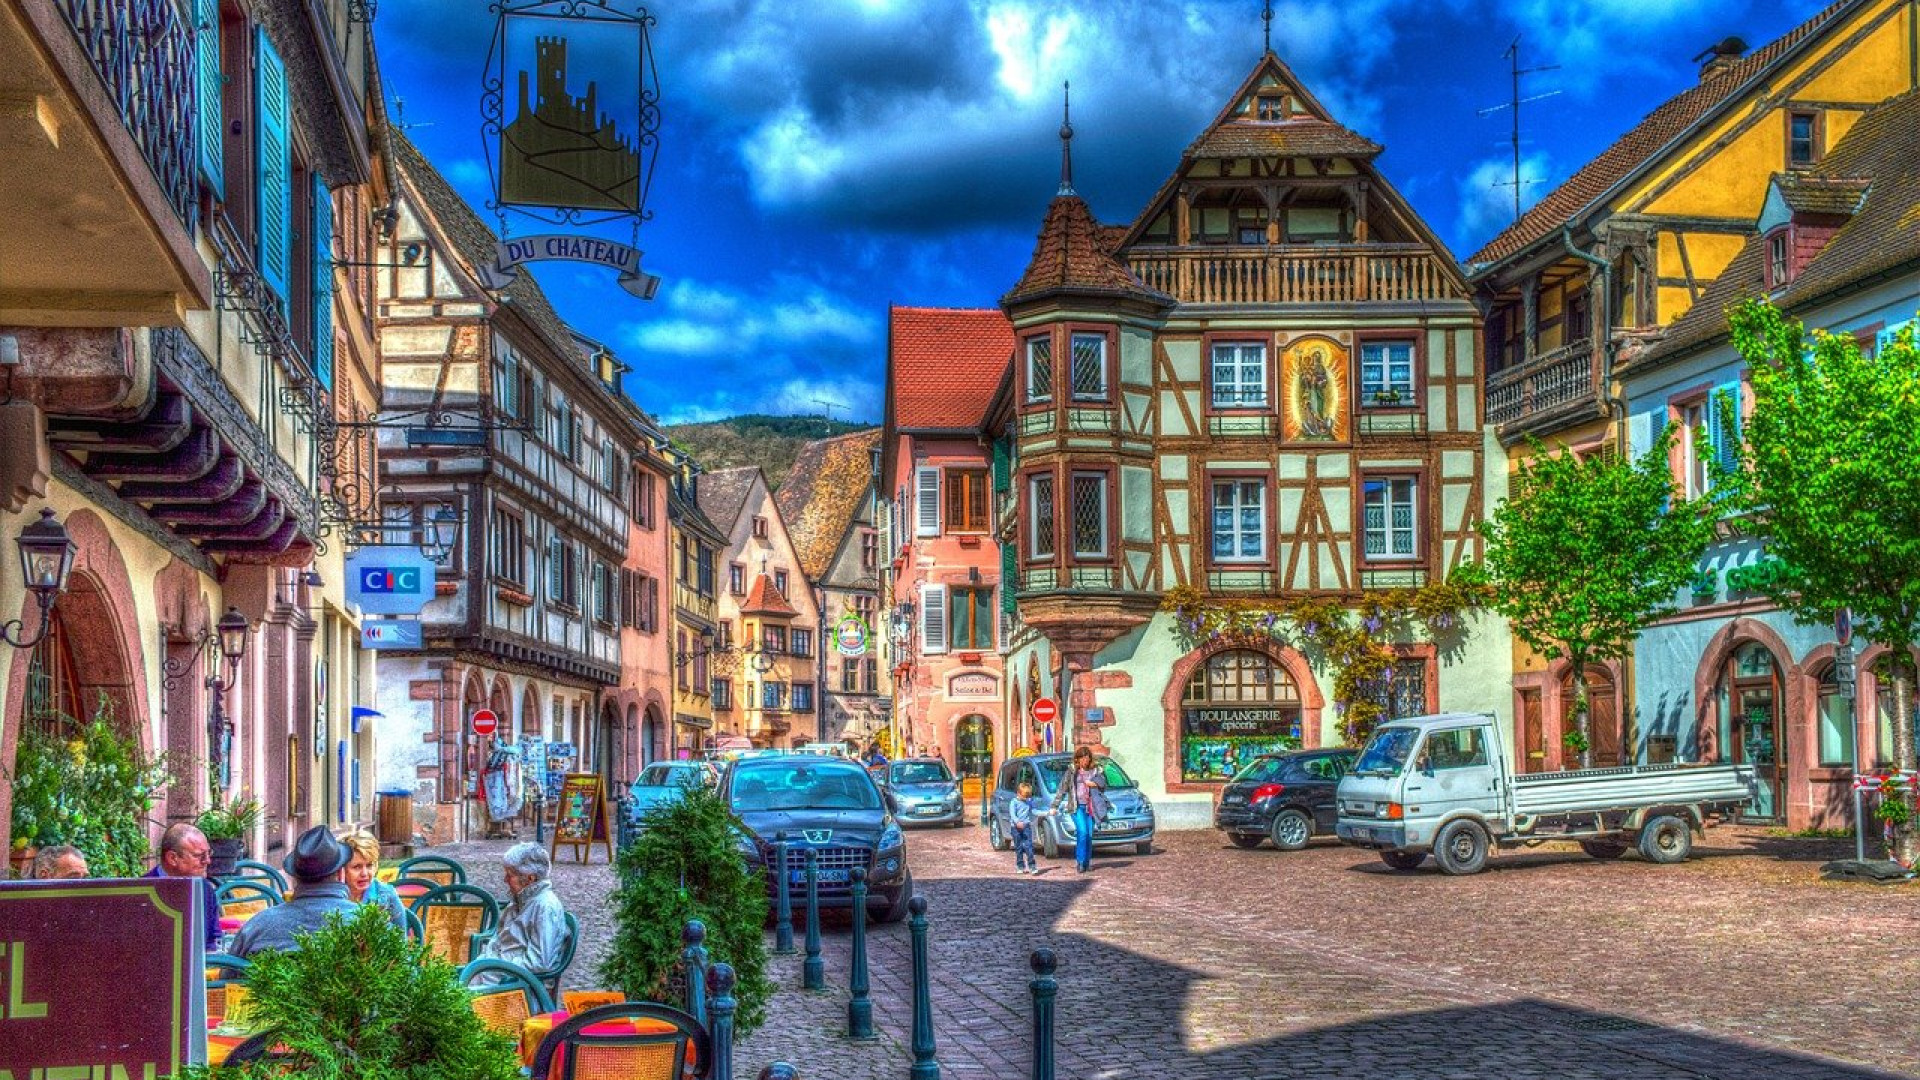 Investissement immobilier en Alsace : trouvez votre Joyau Caché...